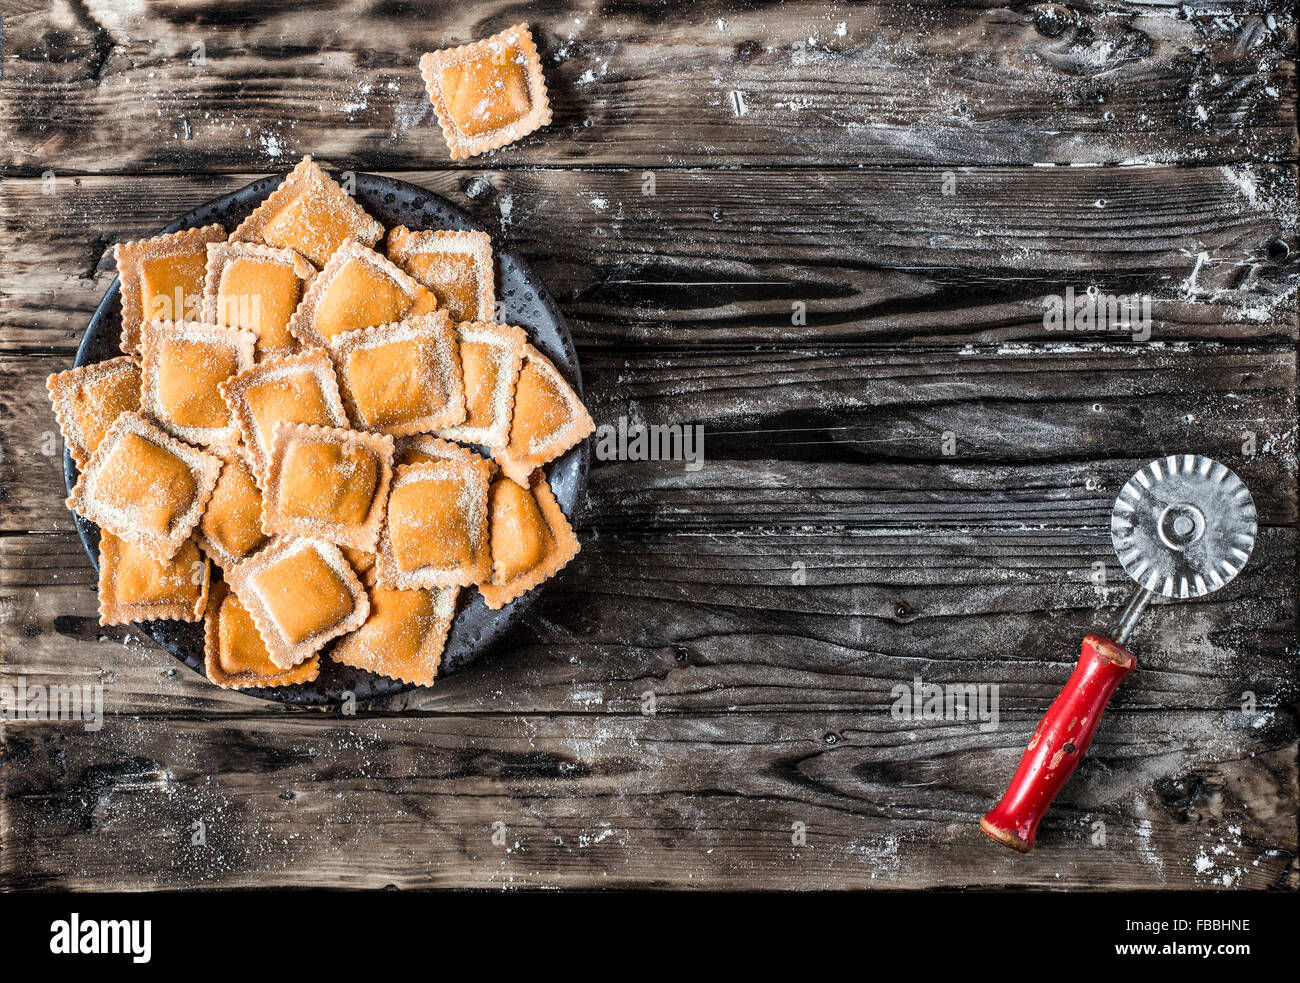 Ravioli di Zucca. Ravioles de potiron frais fait maison sur une table en bois et un cutter vintage des pâtes. Banque D'Images